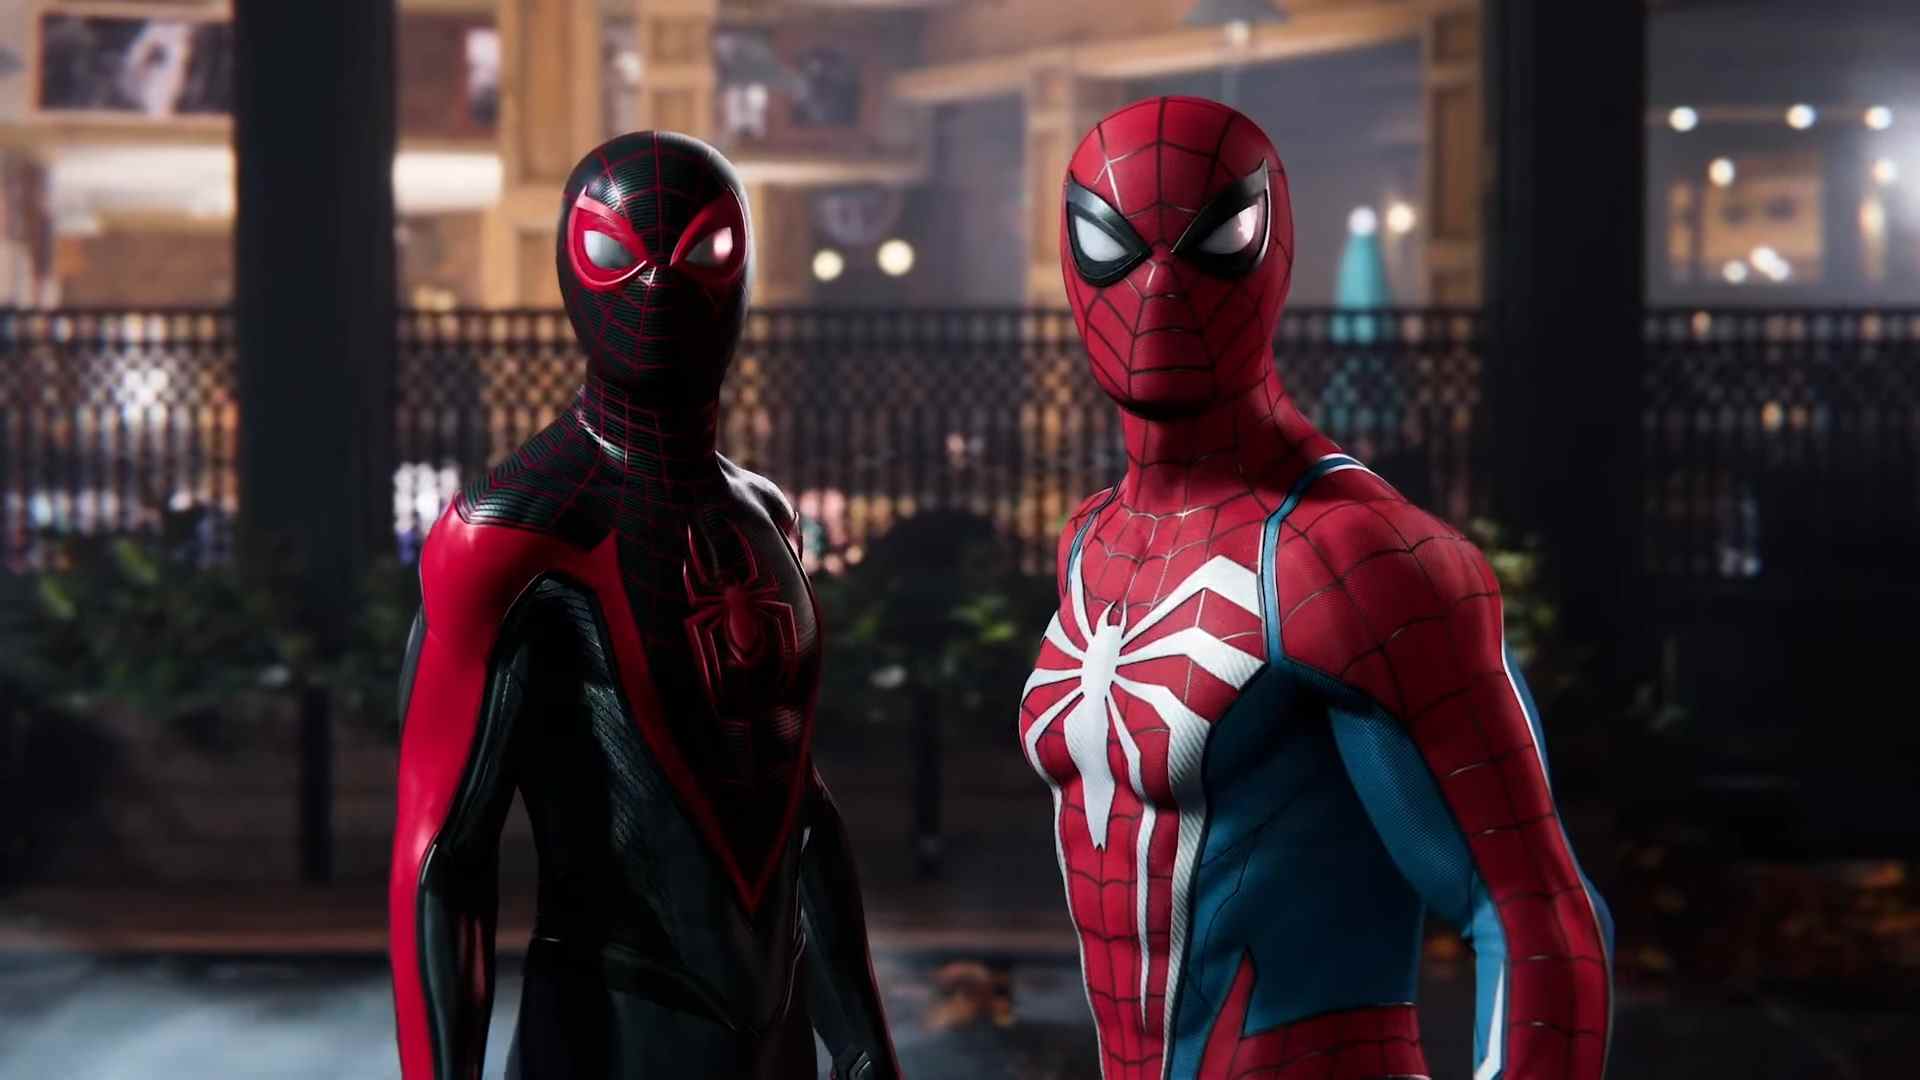 Capture d'écran de Marvel's Spider-Man 2 montrant Peter Parker et Miles Morales debout côte à côte dans leurs costumes Spider-Man respectifs